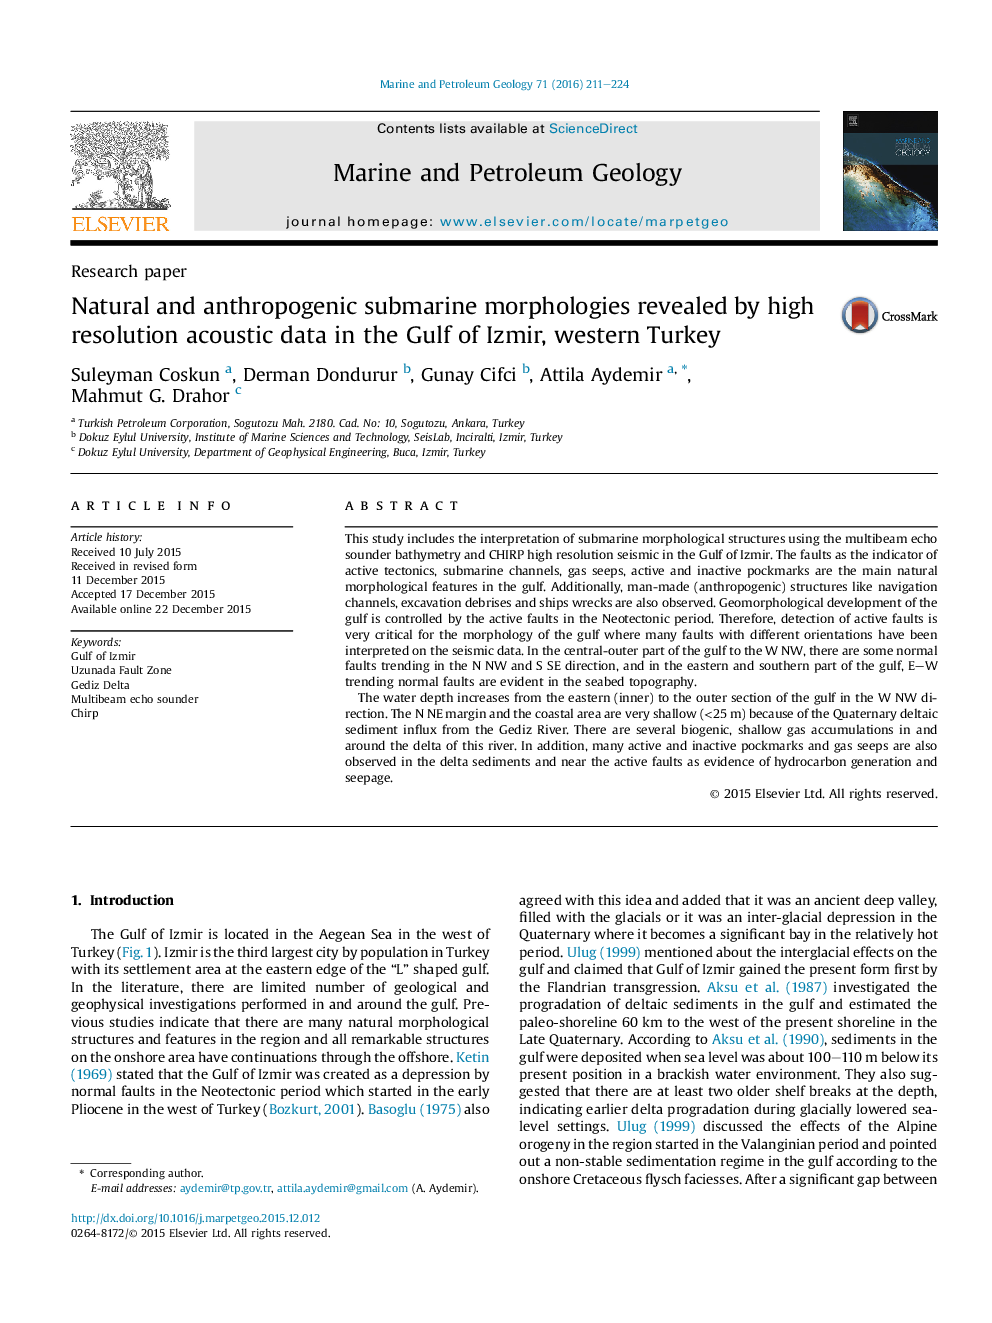 مورفولوژی های زیر زمینی طبیعی و انسانی نشان داده شده با داده های آکوستیک با وضوح بالا در خلیج فارس، غرب ترکیه 